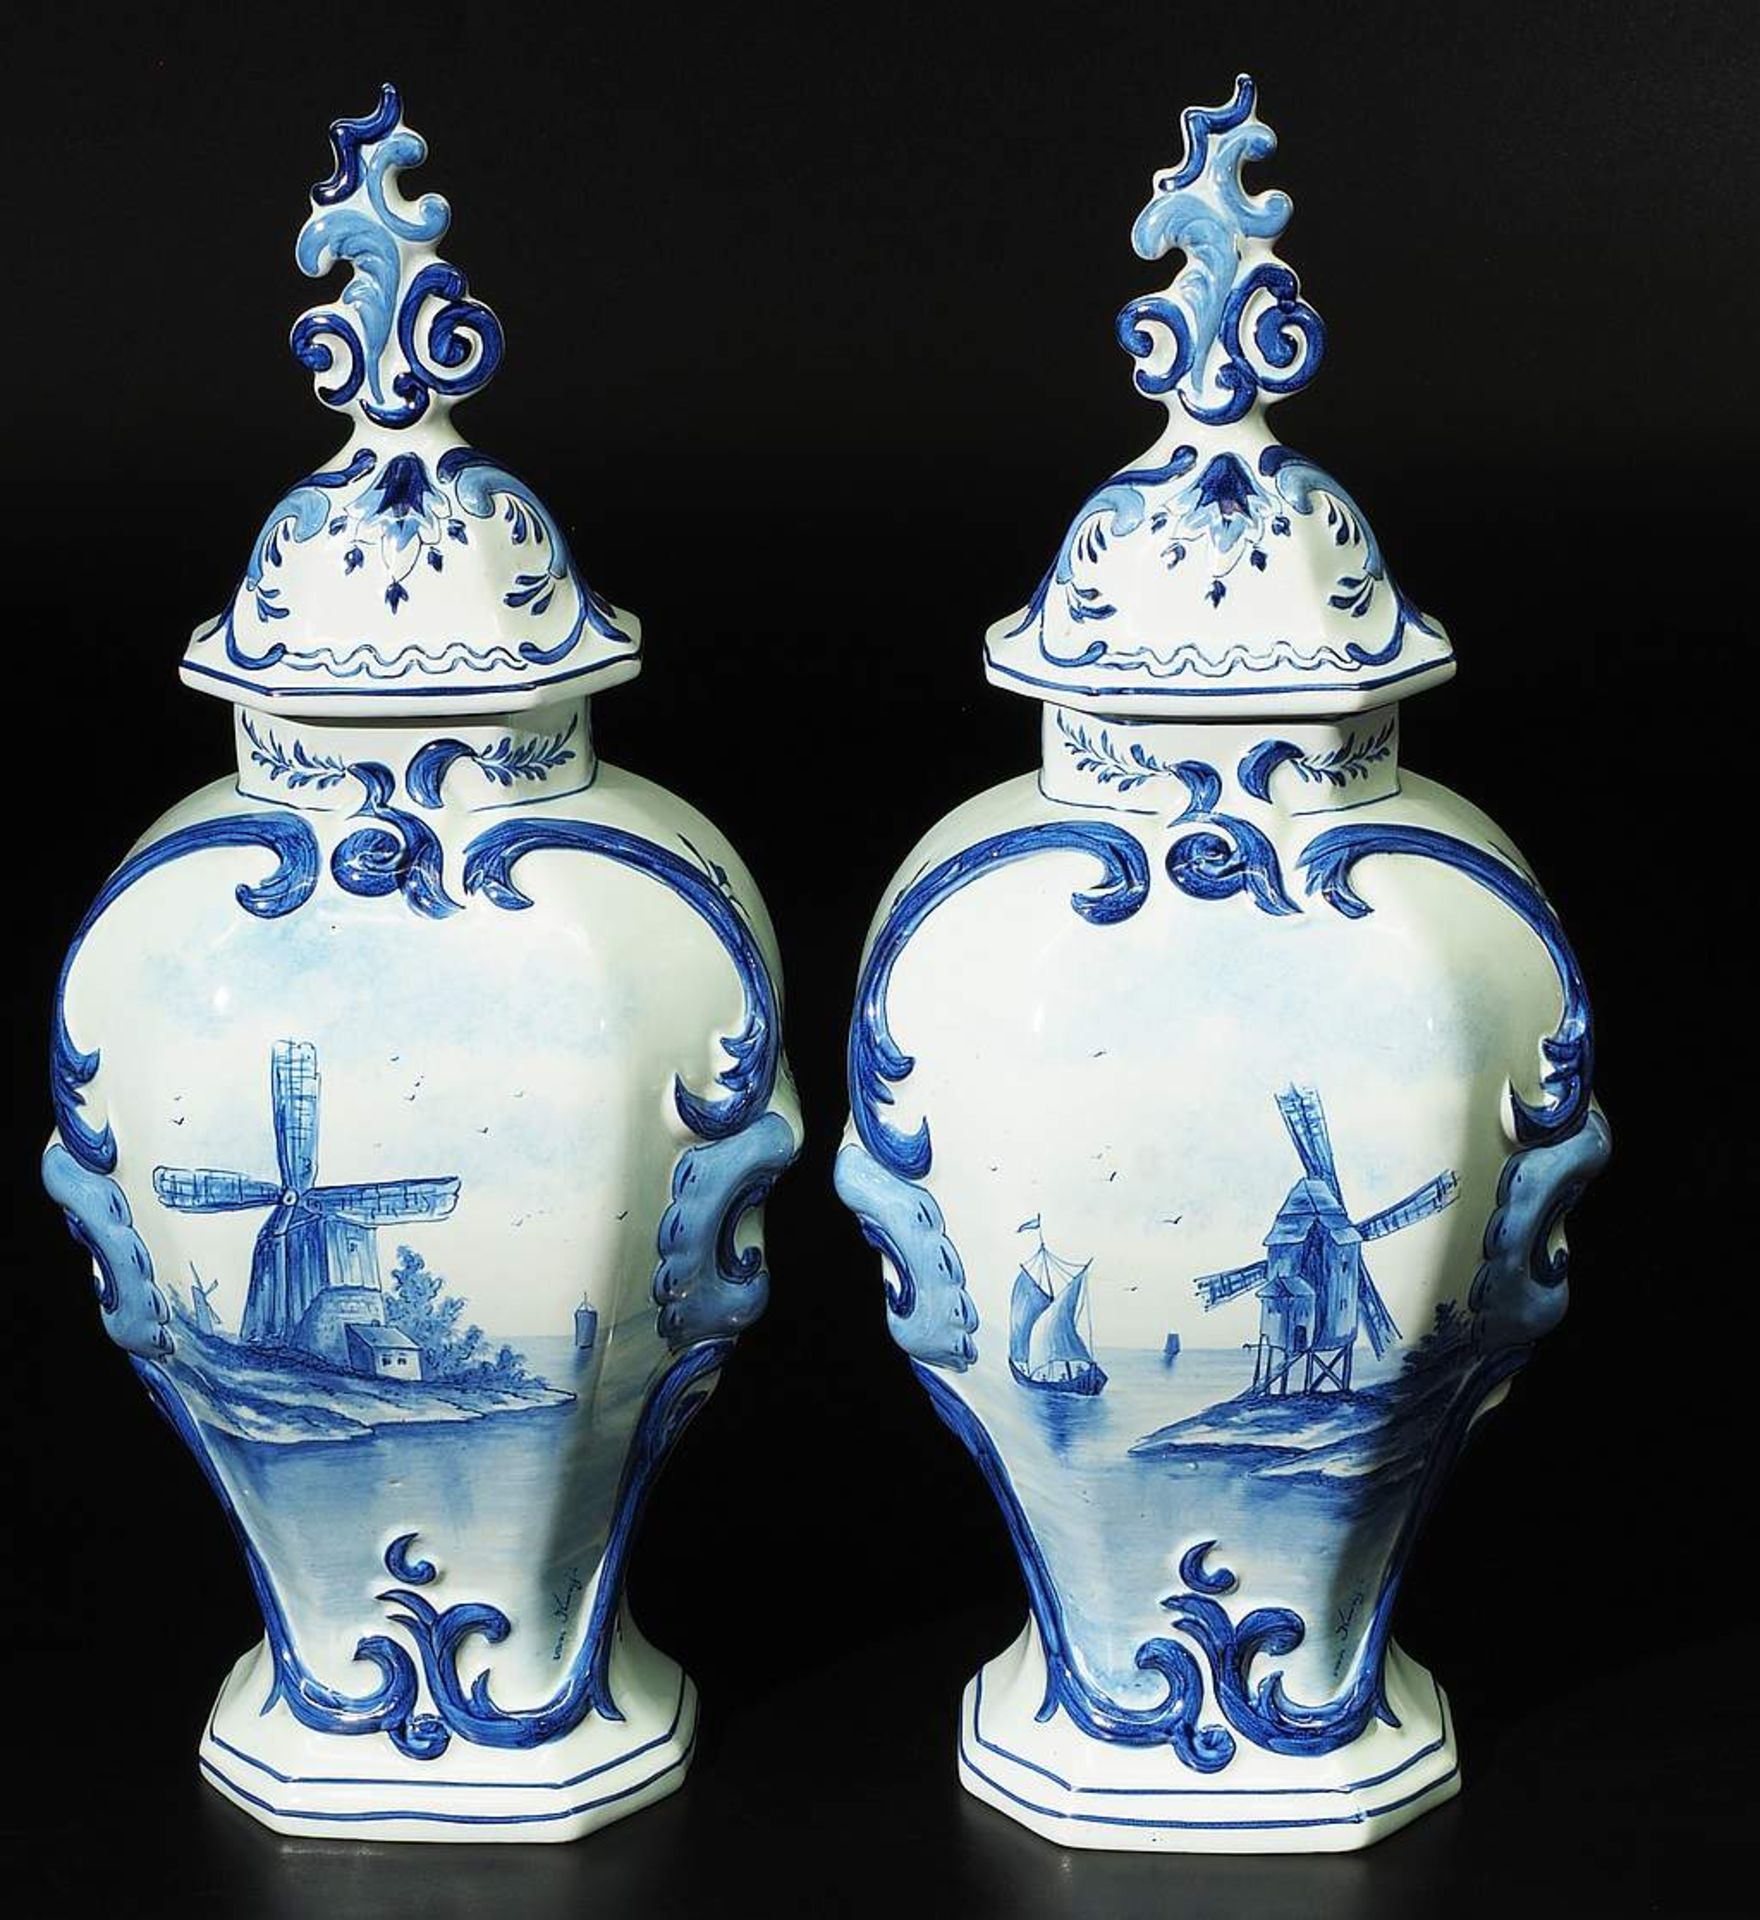 Paar Deckelvasen, Fayence, Blaumalerei, typisch im Stil der Delfter Vasen gearbeitet - Bild 2 aus 7